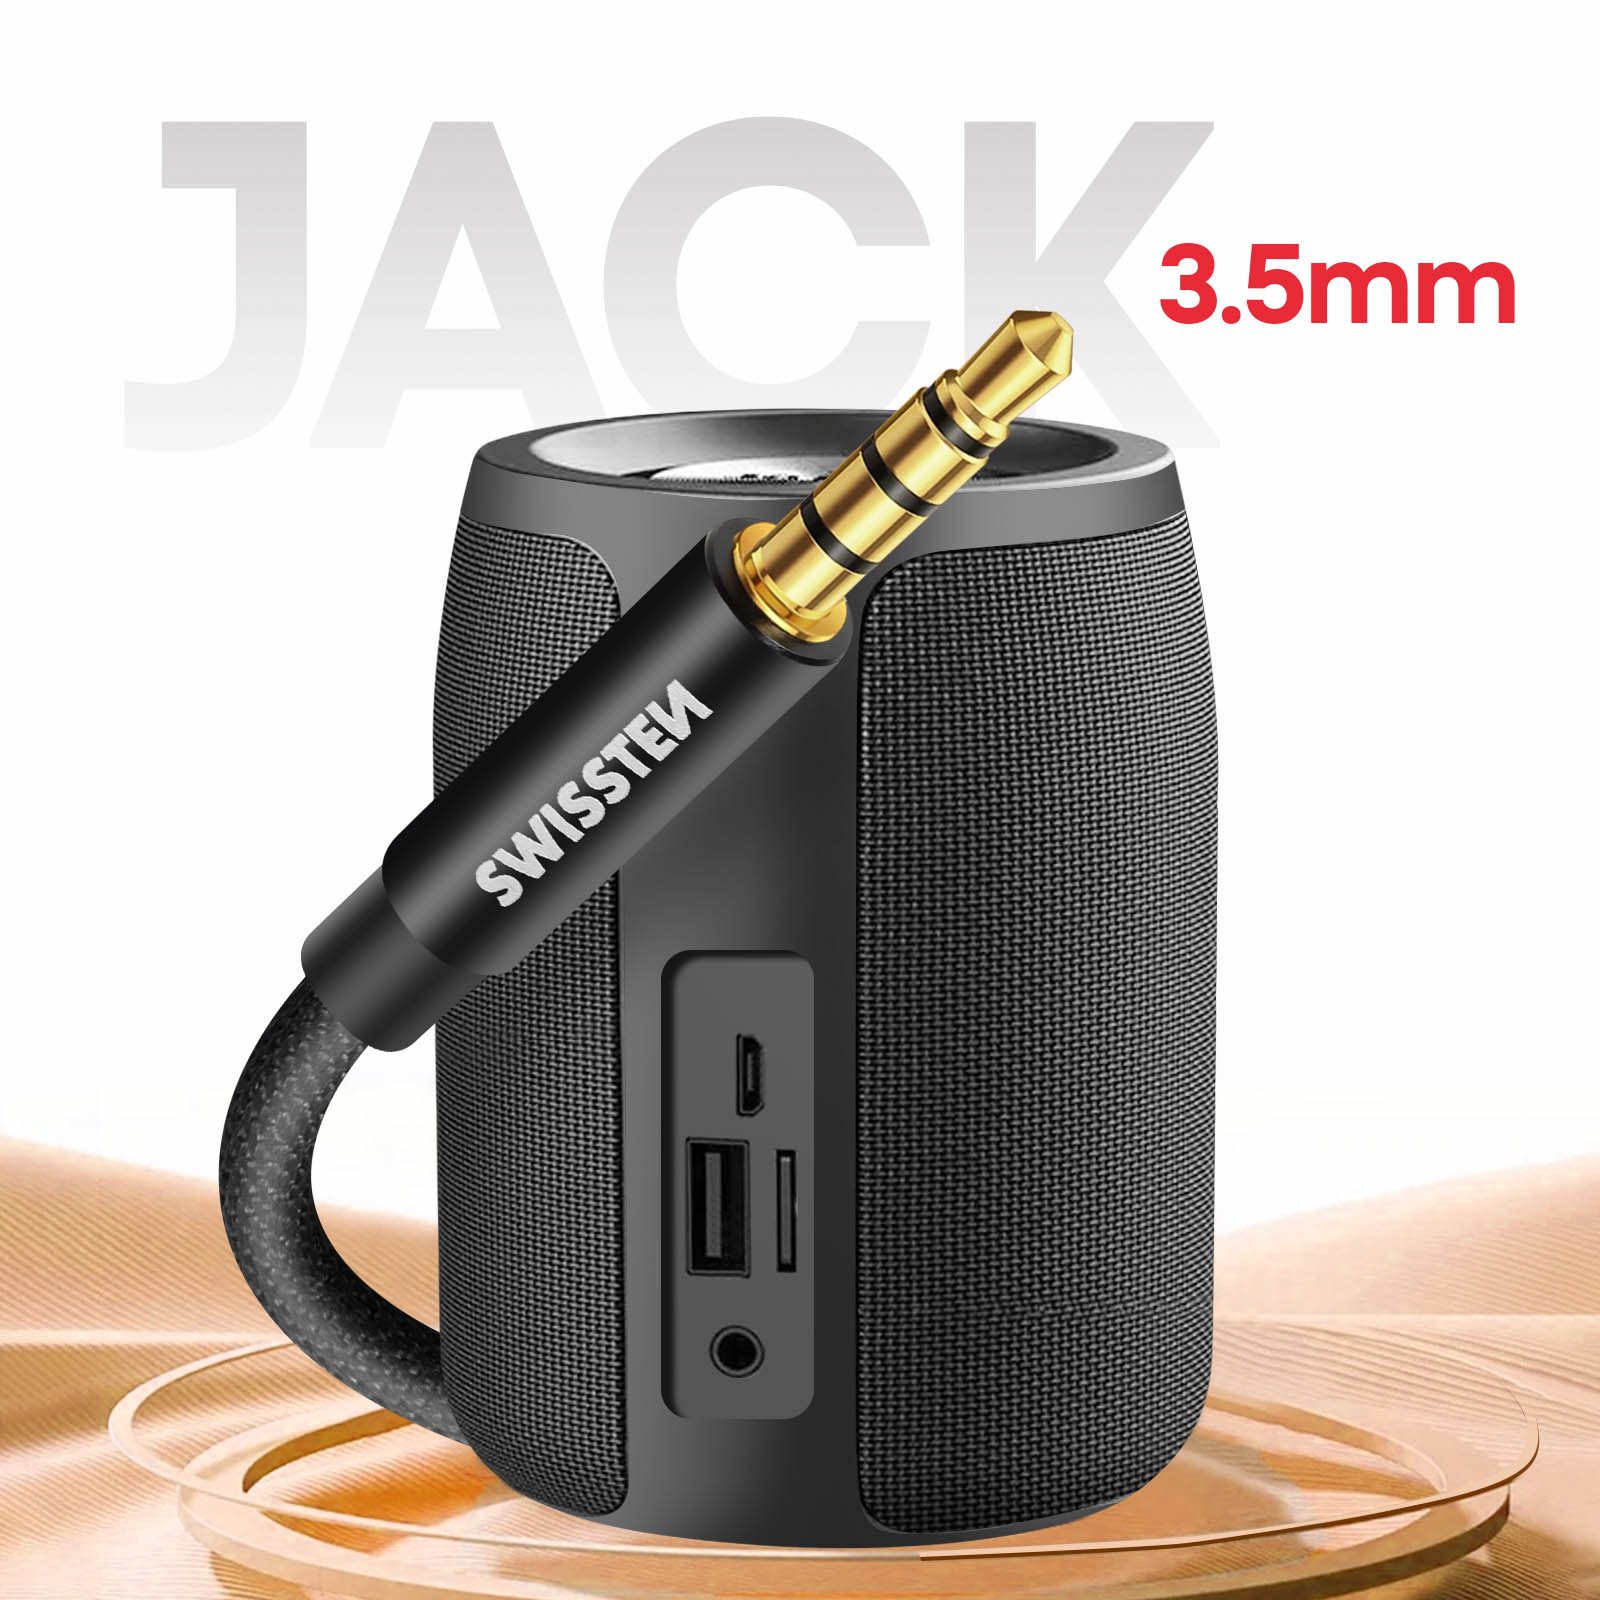 Nanocable Câble Adaptateur Audio USB-C vers Jack 3.5 Noir 11cm